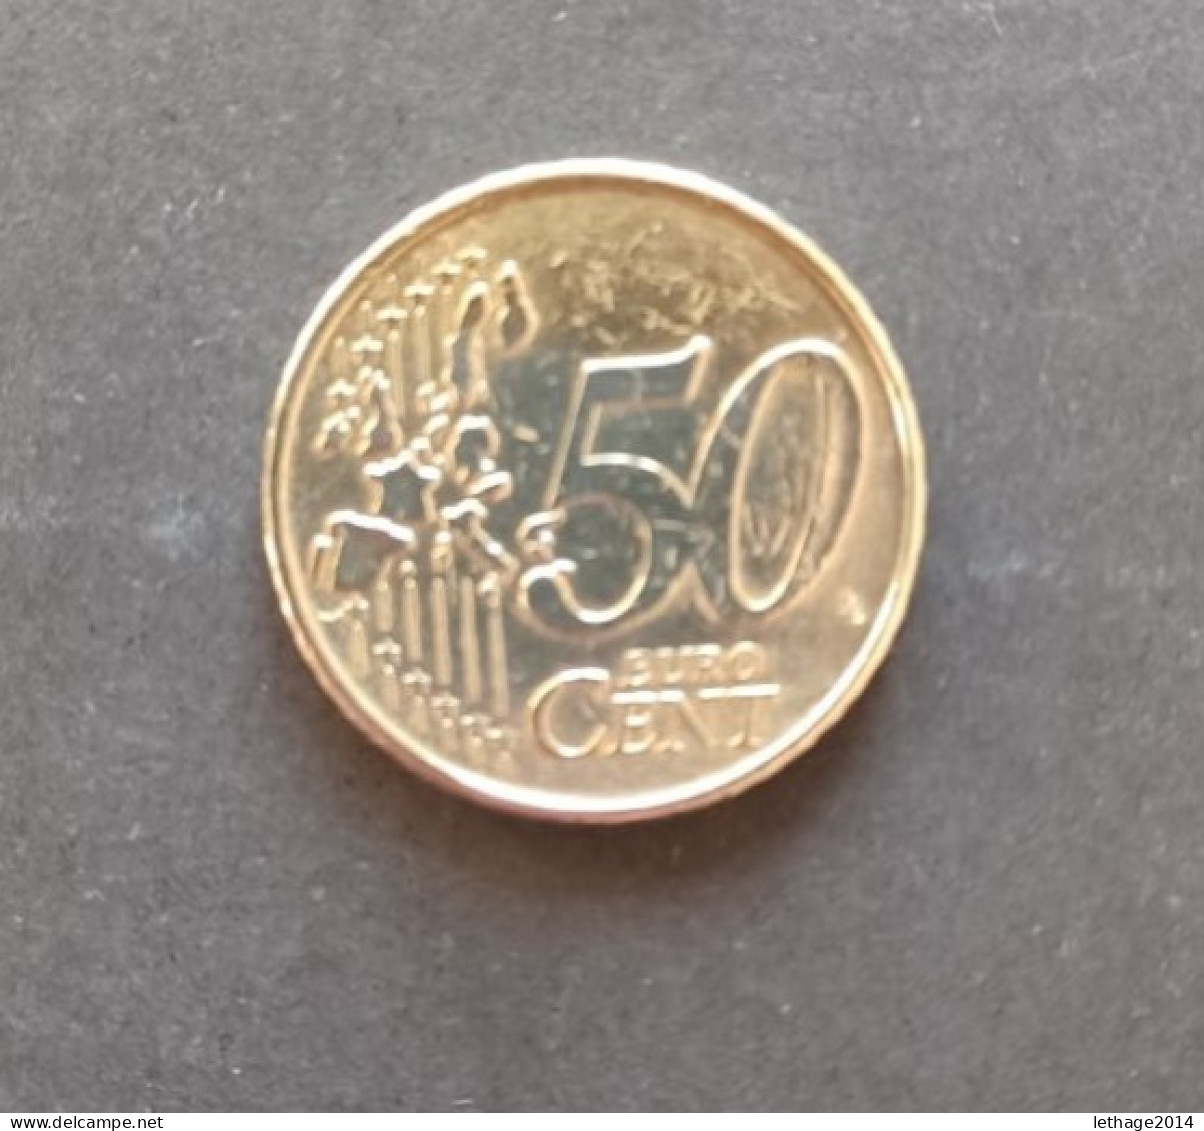 COIN EURO BELGIO 50 CENT 1999 BOCCACCIO ISSUE 180 MIGLIONI I ISSUED - Belgien